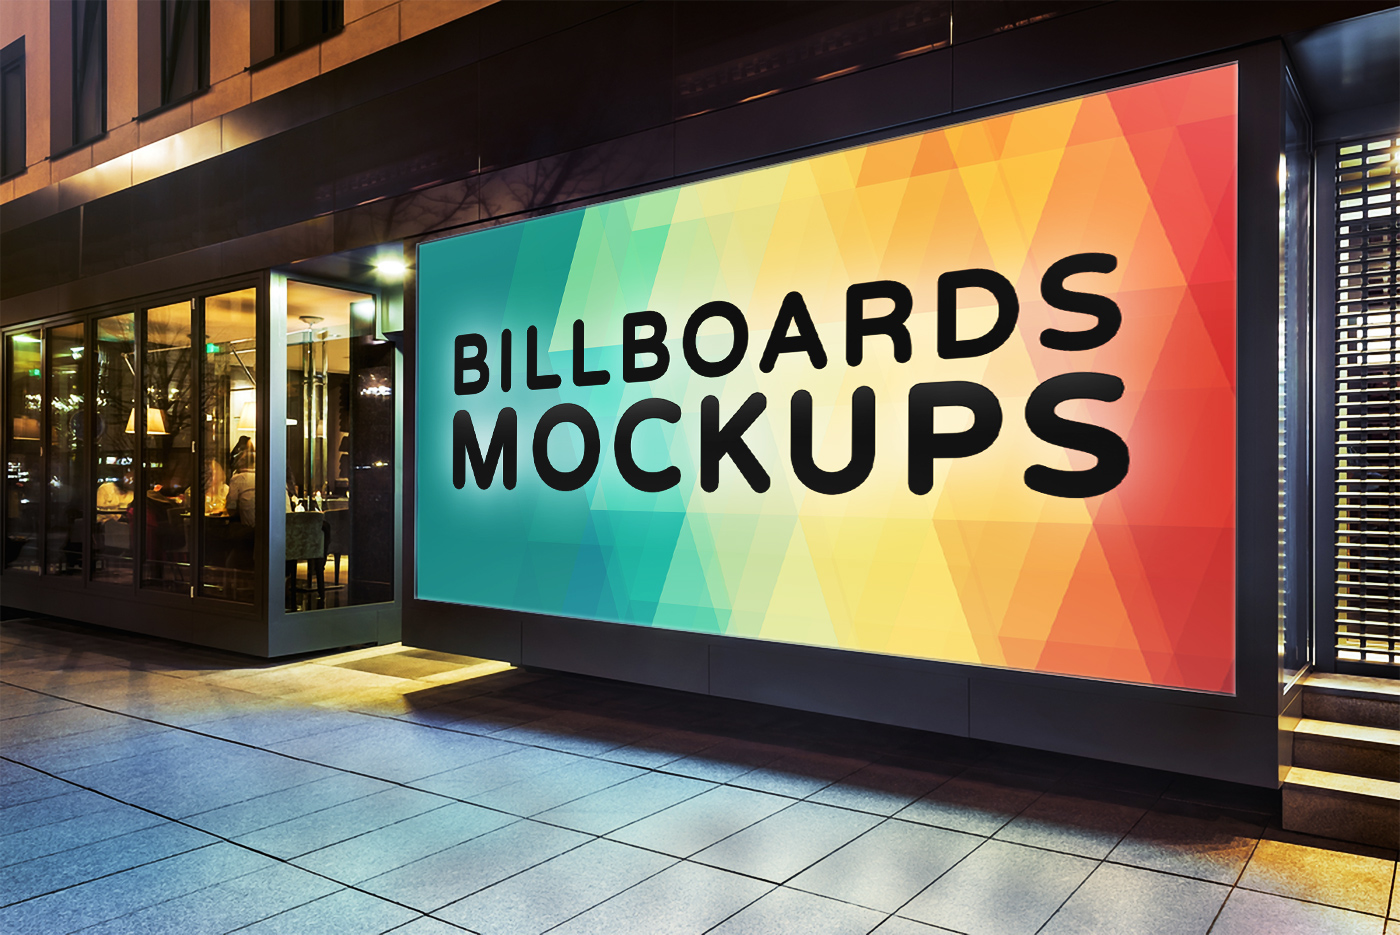 illboard Billboards bundle set big mock-up ad Advertising  road banner